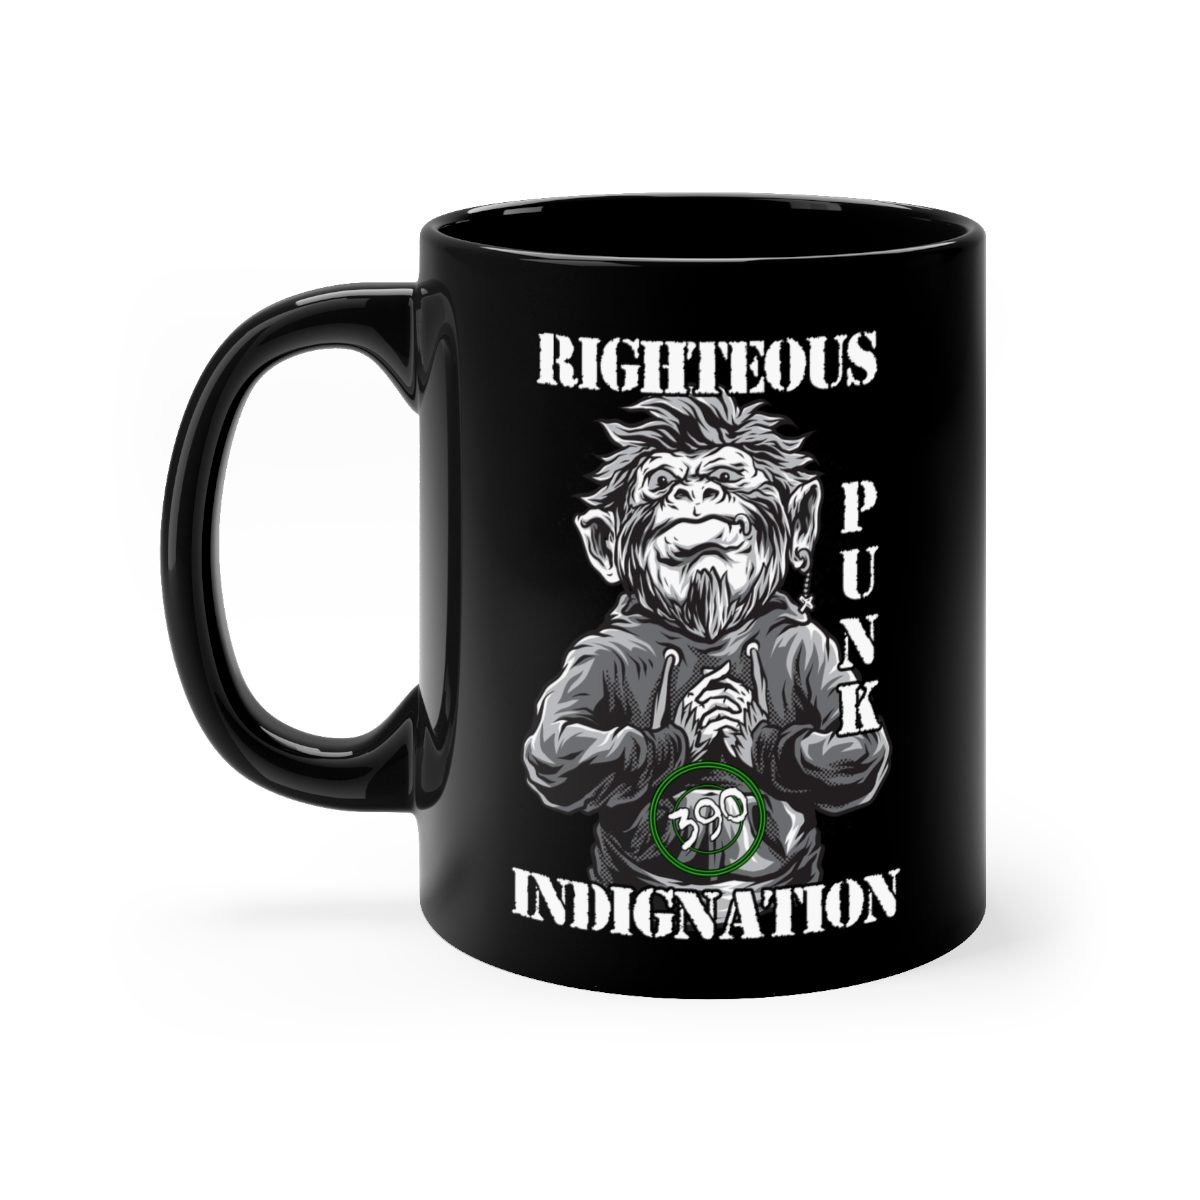 390 – Righteous Punk Indignation 11oz Black mug